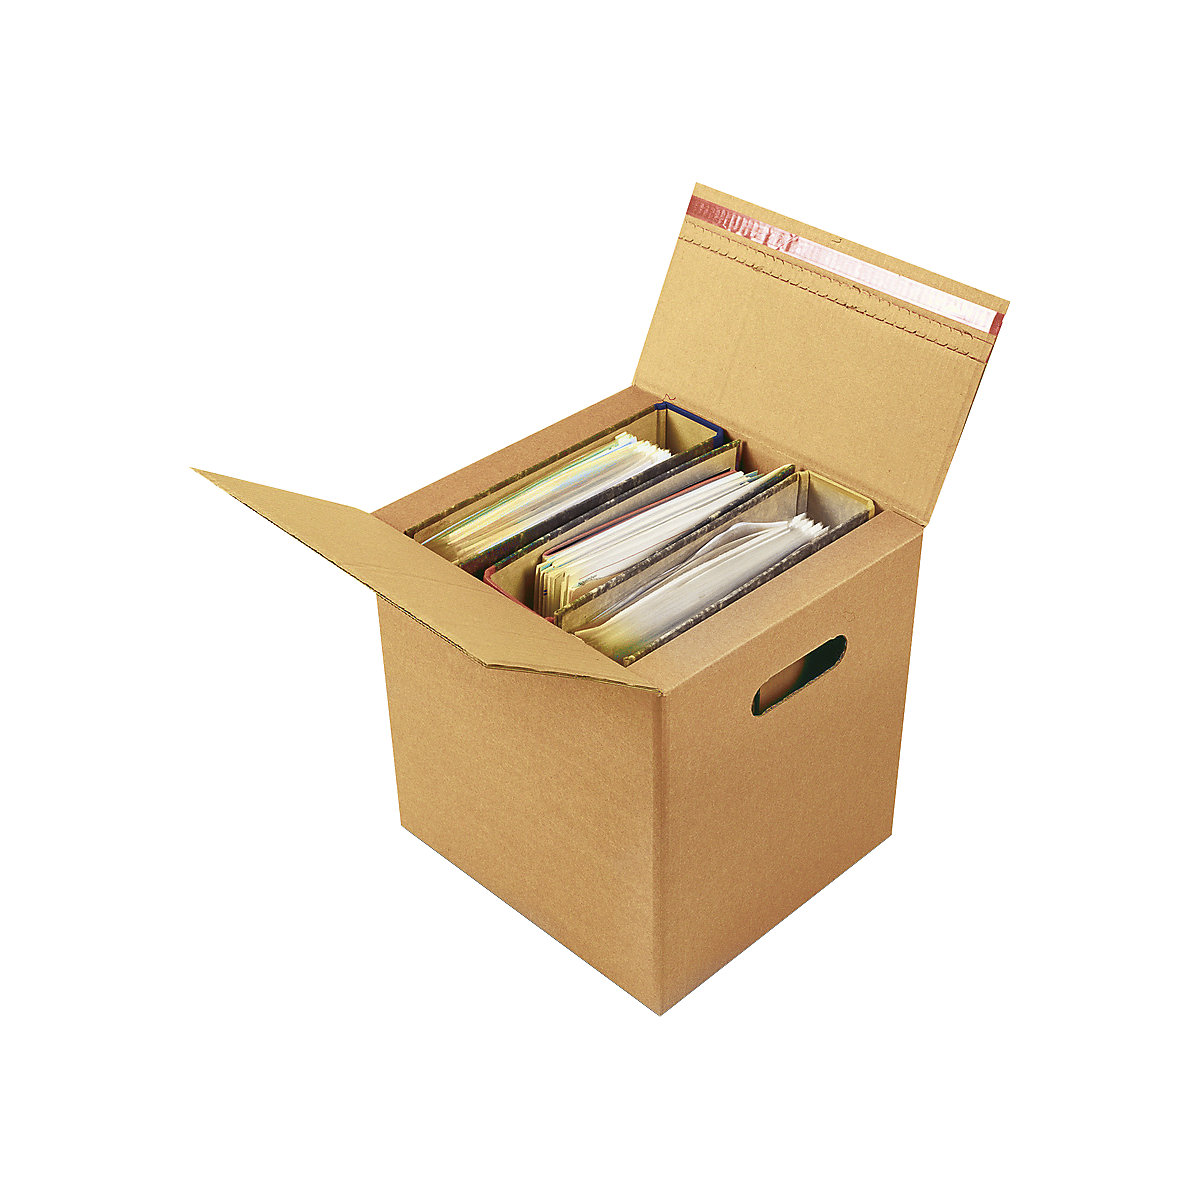 Ordner-Karton, für 2 – 3 Ordner mit Selbstklebeverschluss, Innenmaße 320 x 288 x 315 mm, ab 8 Stk-1